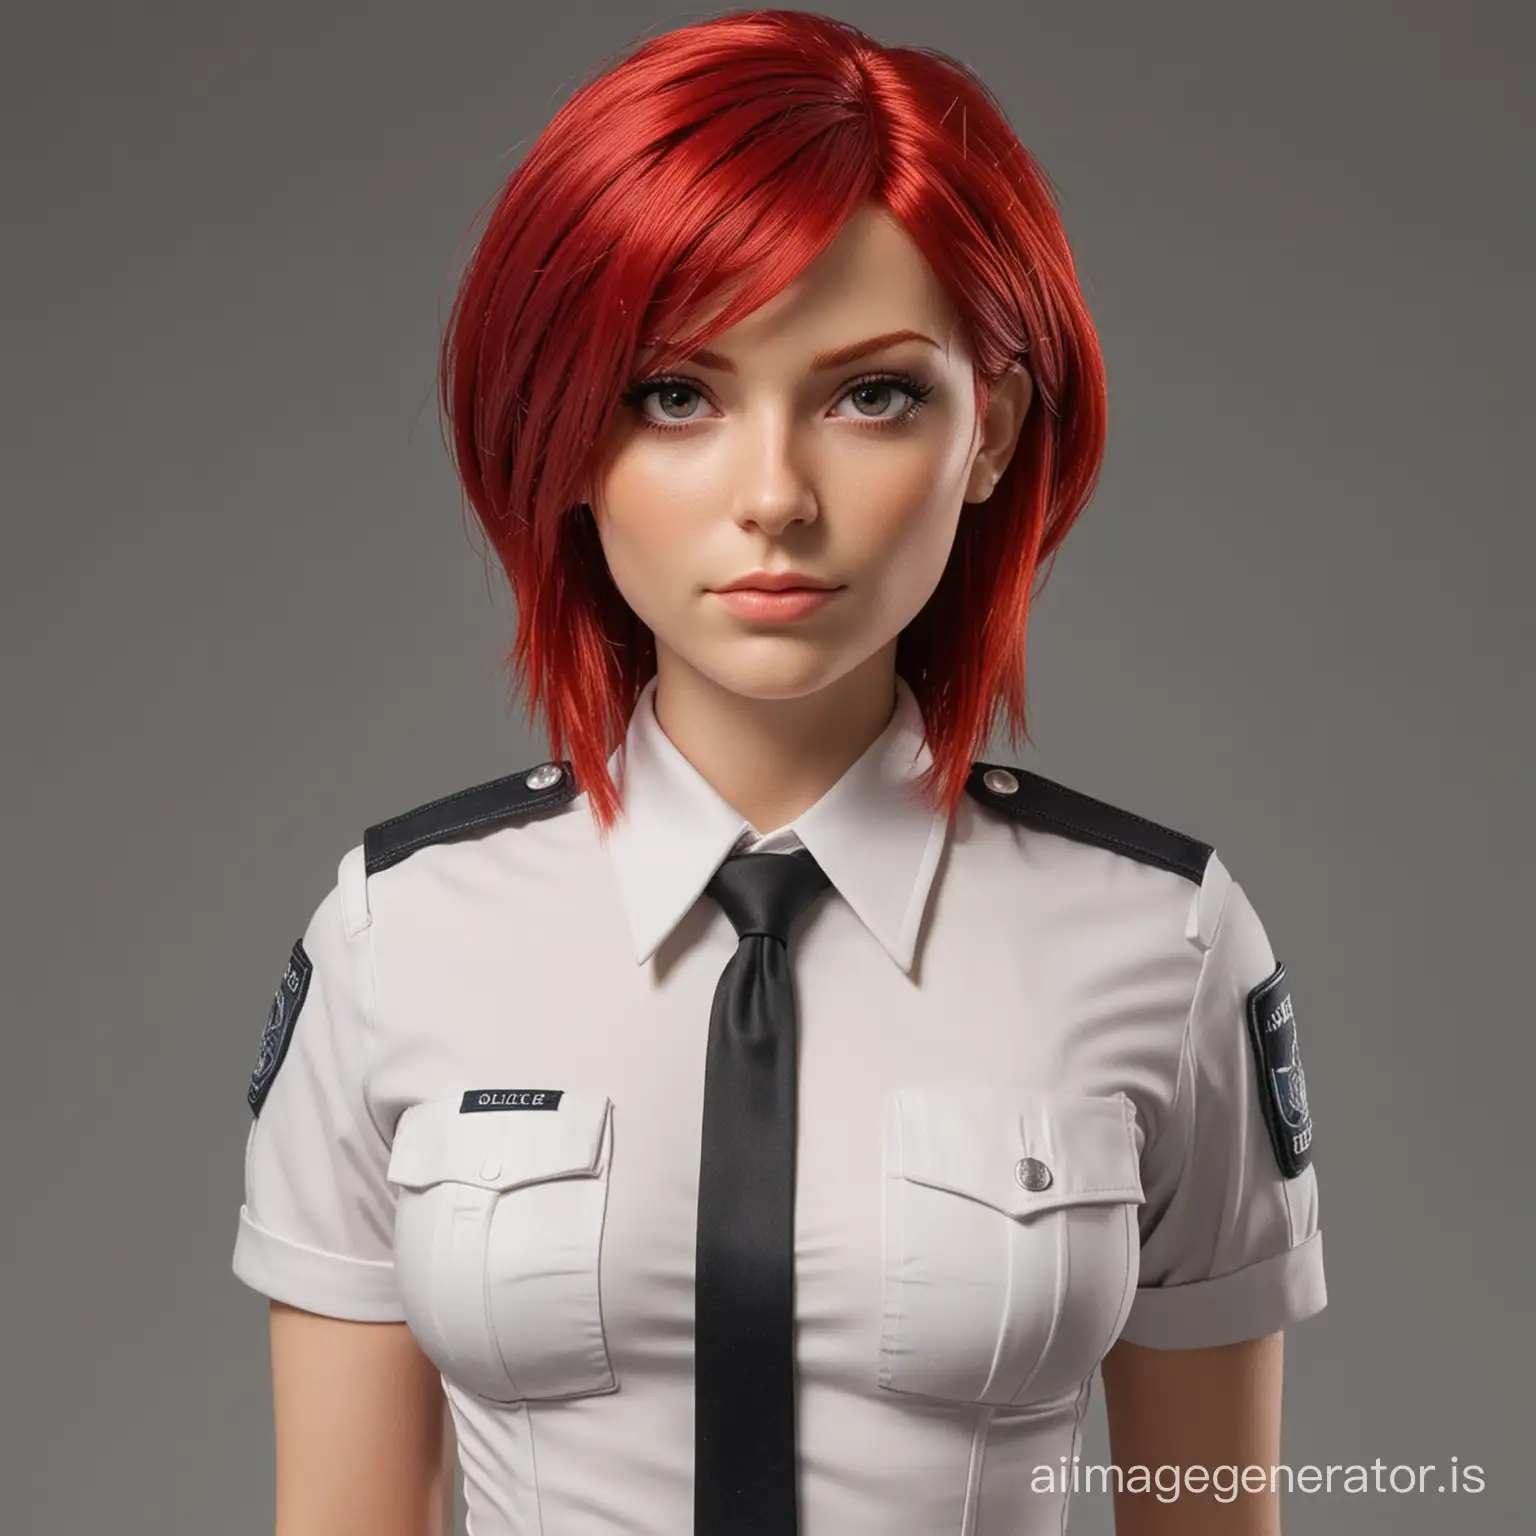 blood red hair,  female police uniform slender build, 34D bust